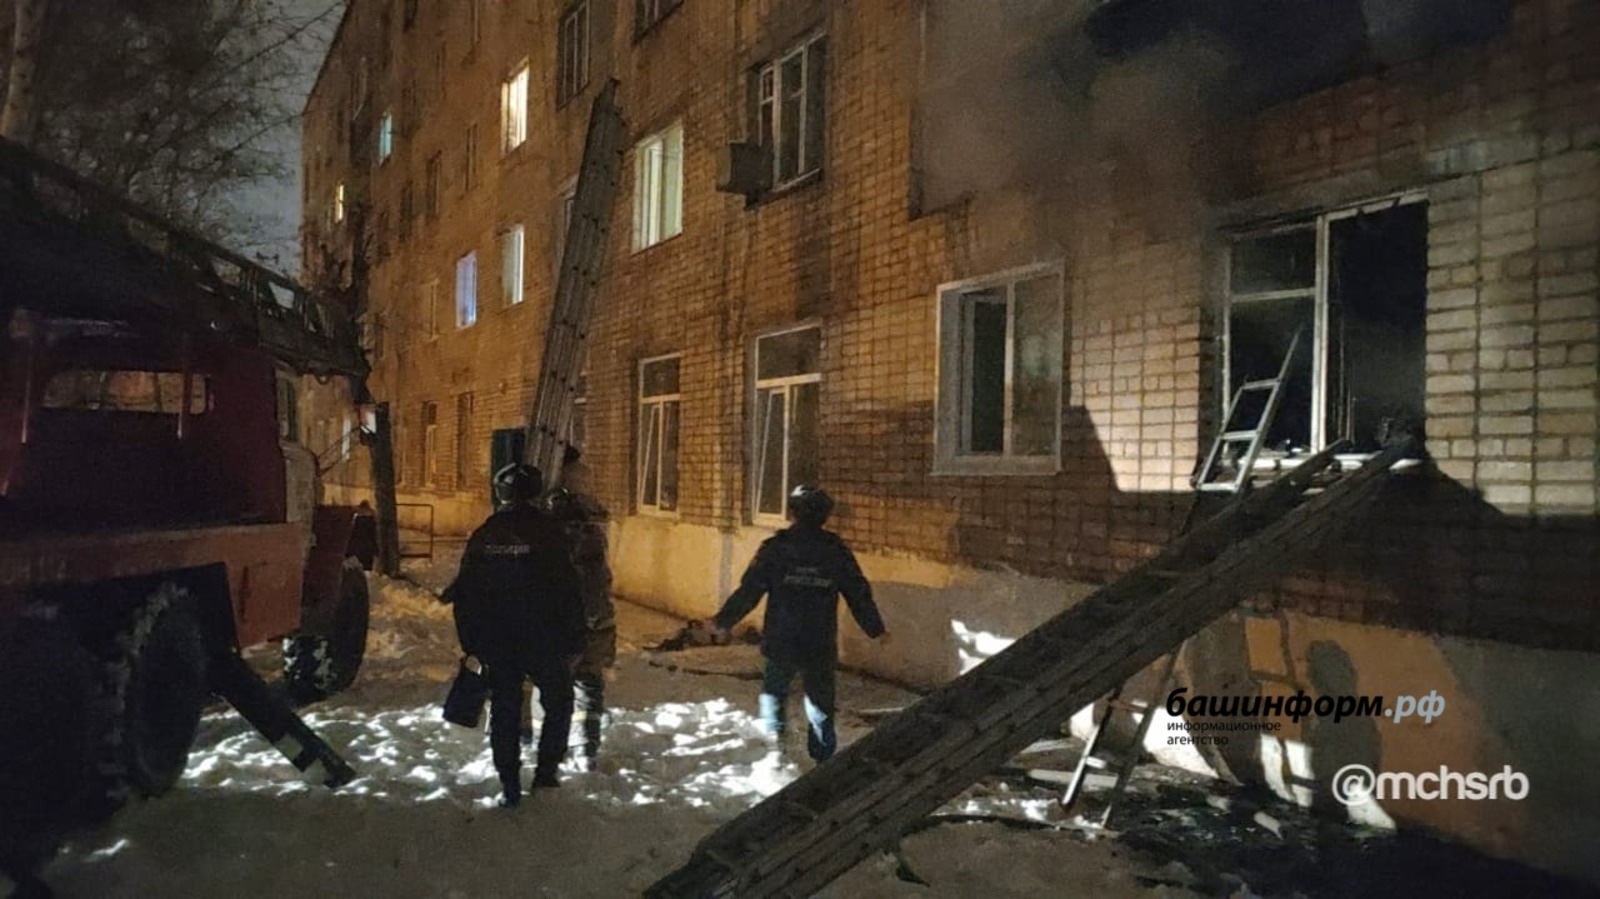 В одном из жилых домов в Башкирии произошёл пожар, жителей эвакуировали